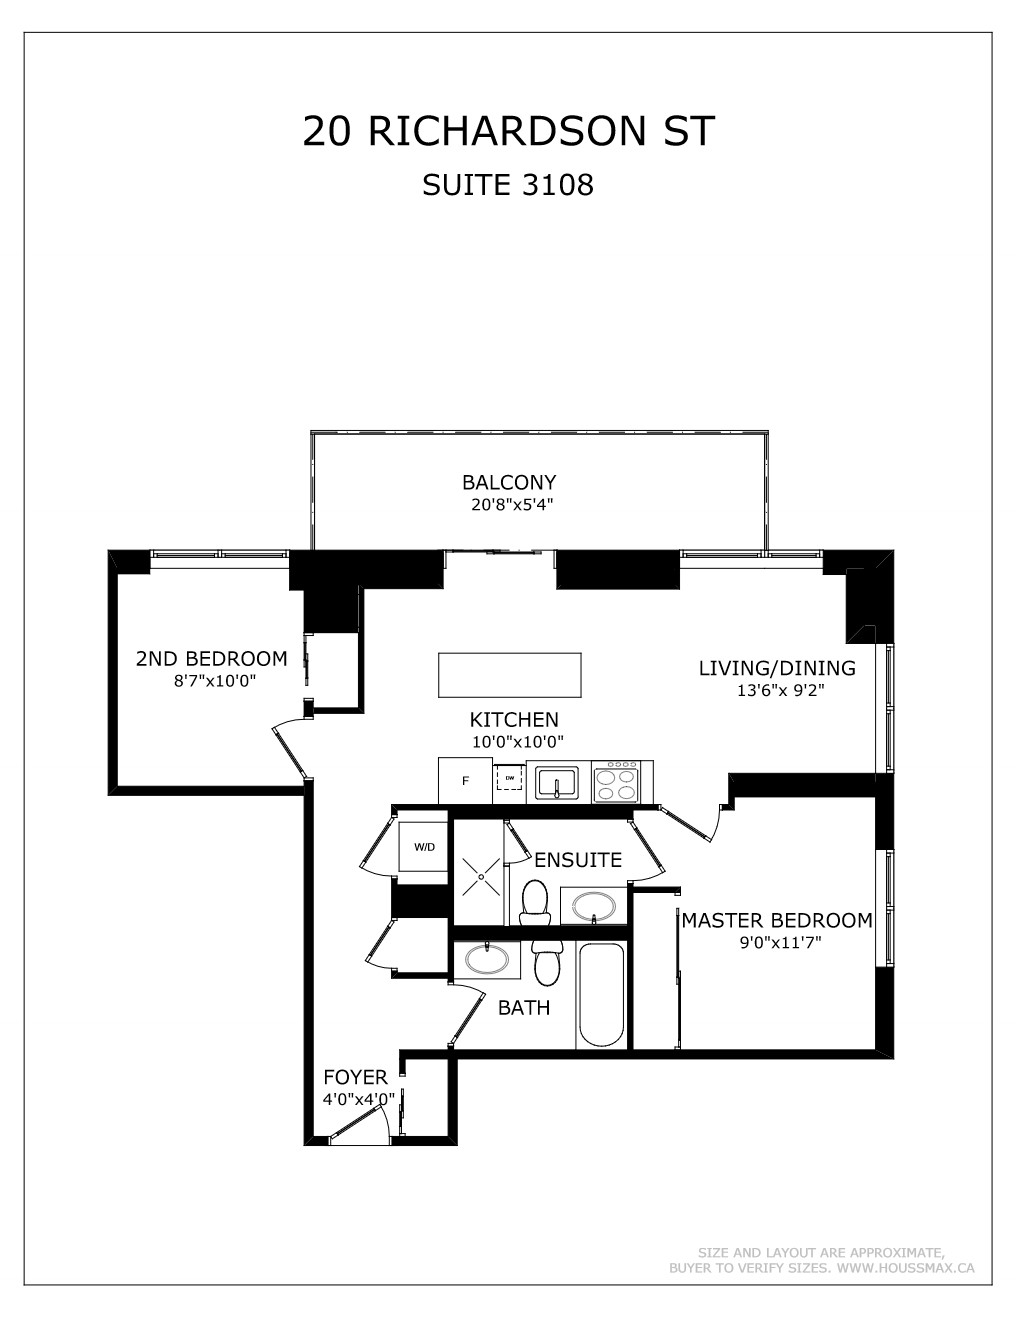 20 Richardson St Unit 3108 – Floor Plans